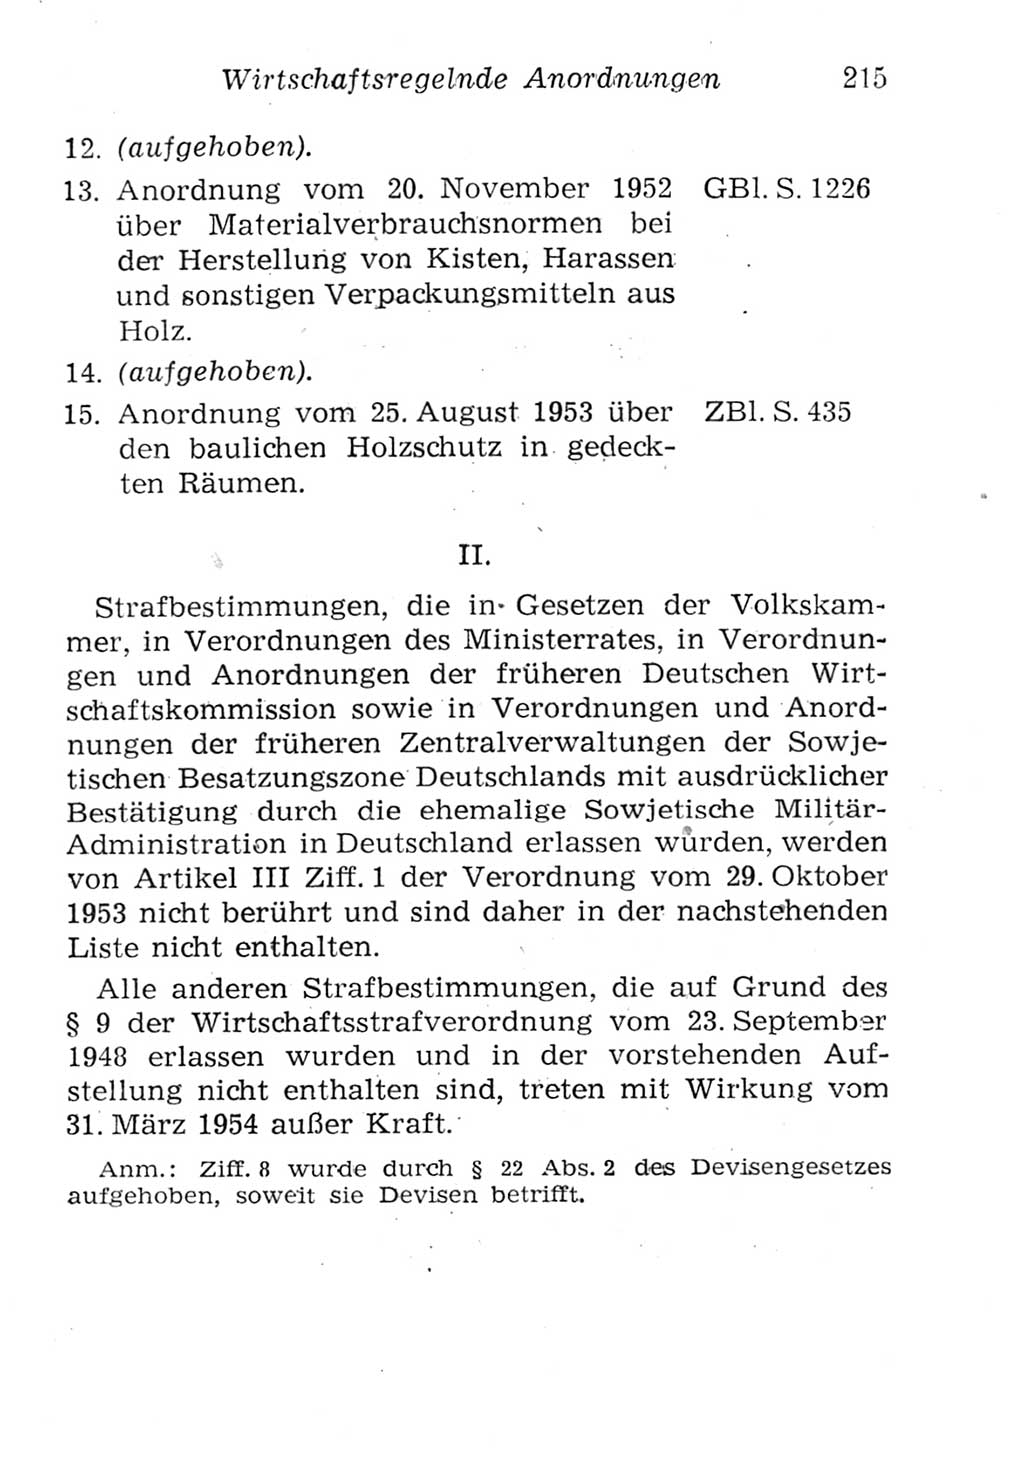 Strafgesetzbuch (StGB) und andere Strafgesetze [Deutsche Demokratische Republik (DDR)] 1957, Seite 215 (StGB Strafges. DDR 1957, S. 215)